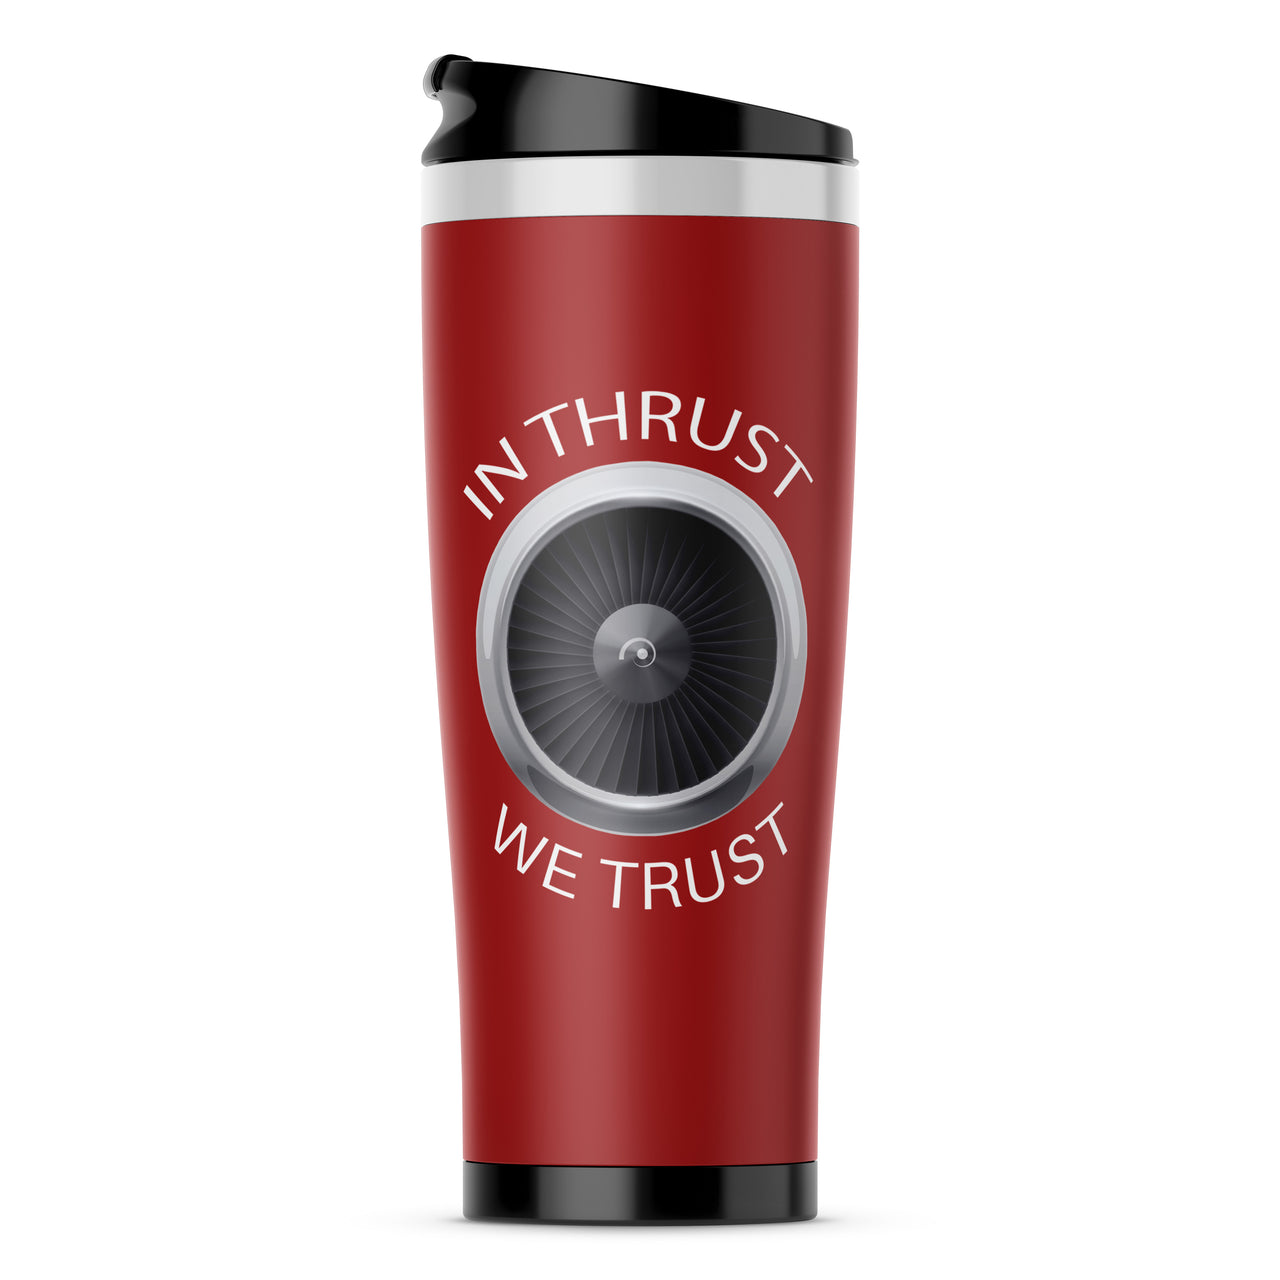 In Thrust We Trust Designed Travel Mugs